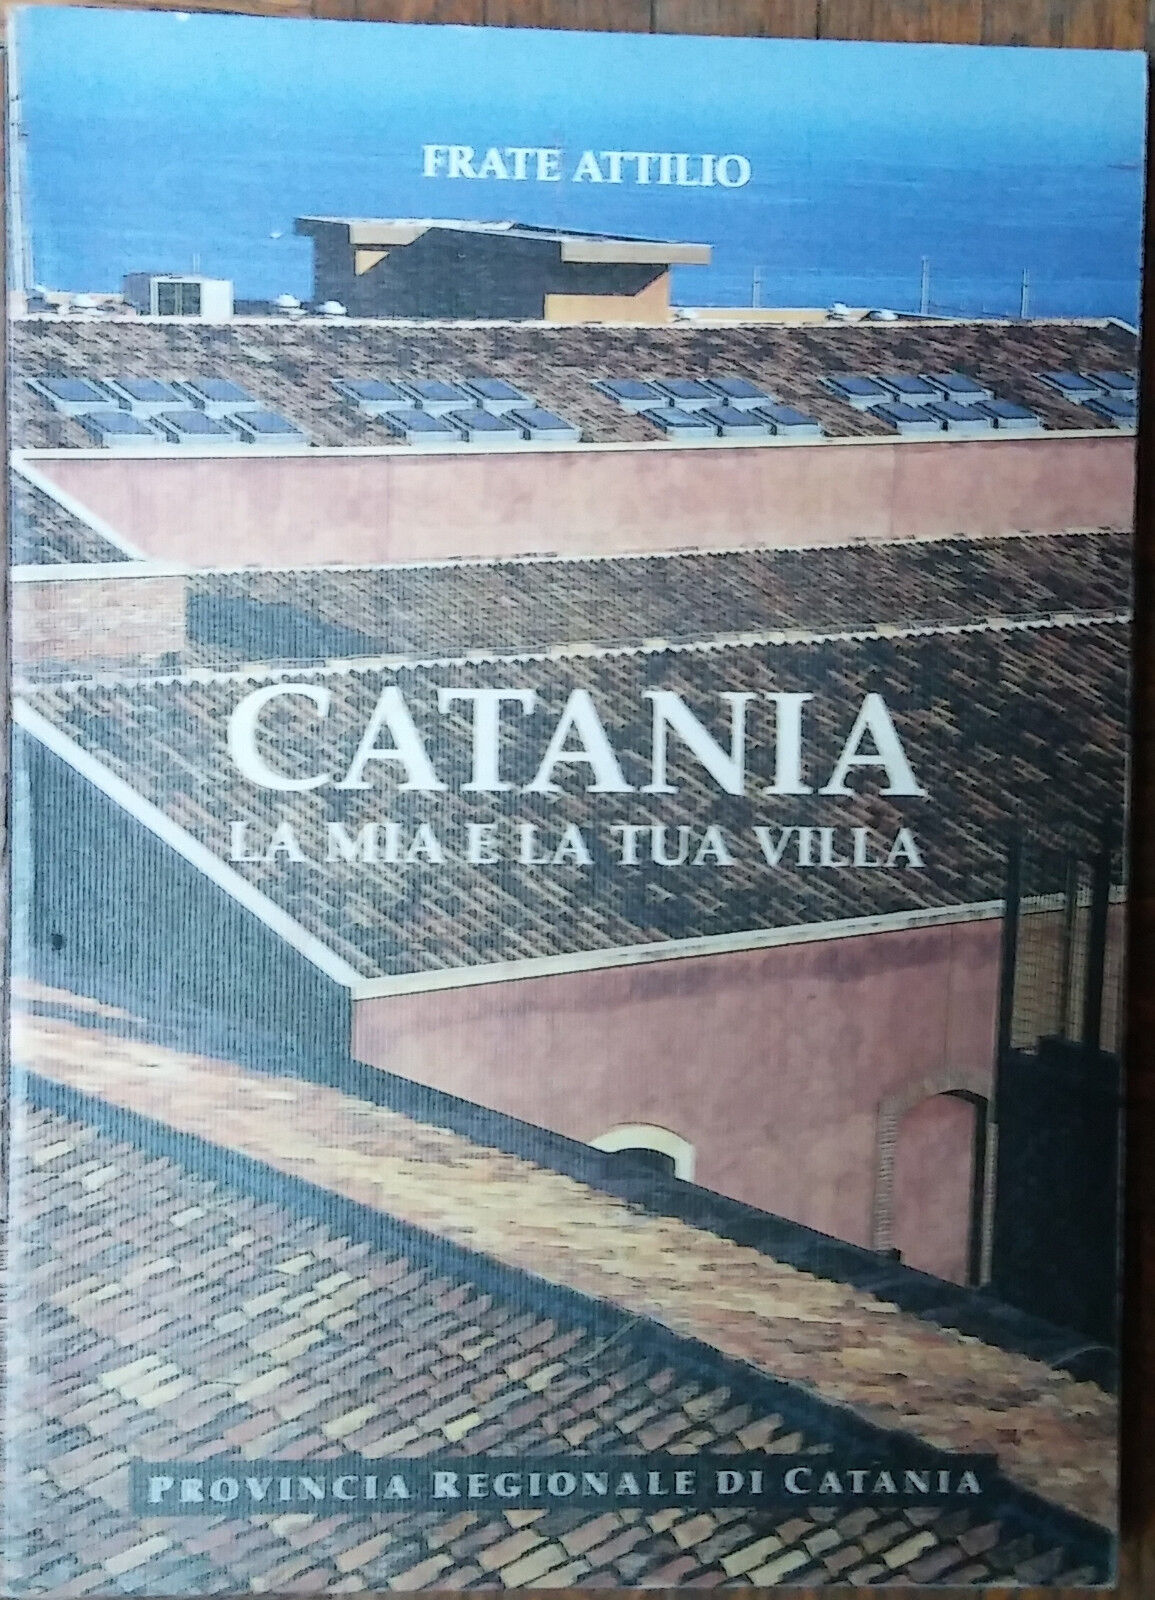 Catania La mia e la tua villa - Frate Attilio - Tipografia Coniglione,1999 - R